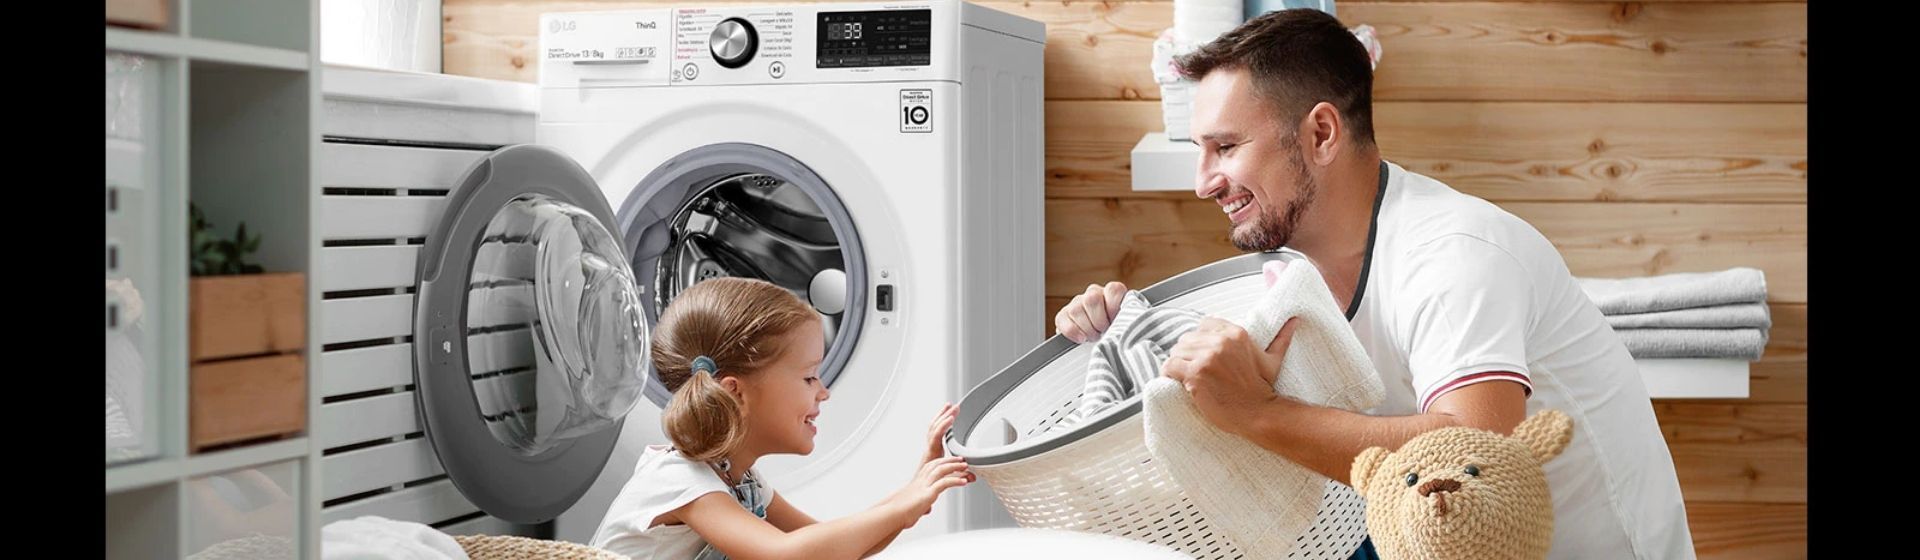 Homem com filha em lavanderia, com cesto de roupa suja e lava e seca LG ao fundo